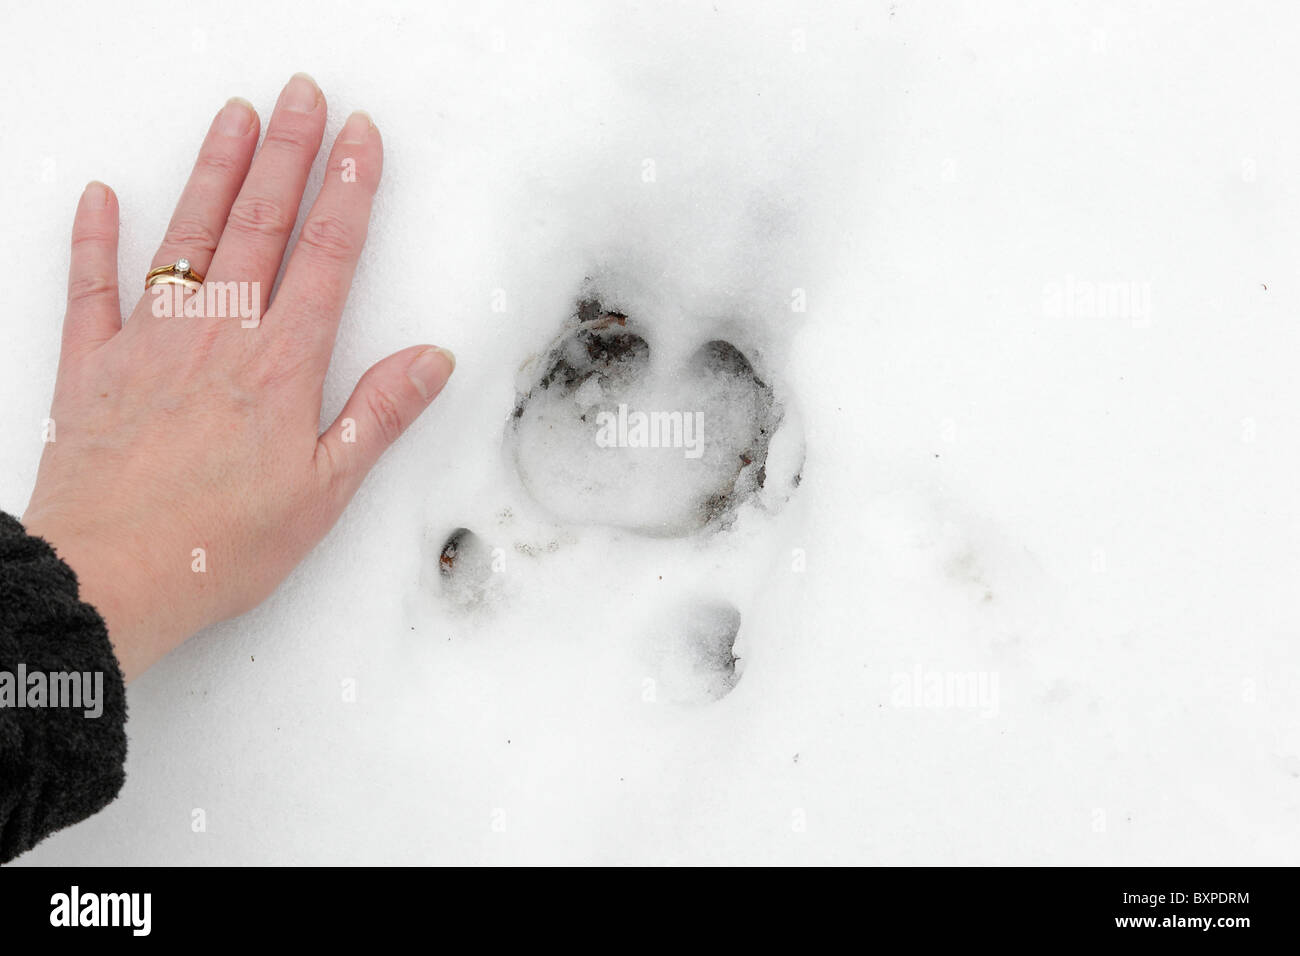 Großen Wildschwein Track zeigt Afterkrallen und menschliche Hand zum Vergleich Stockfoto